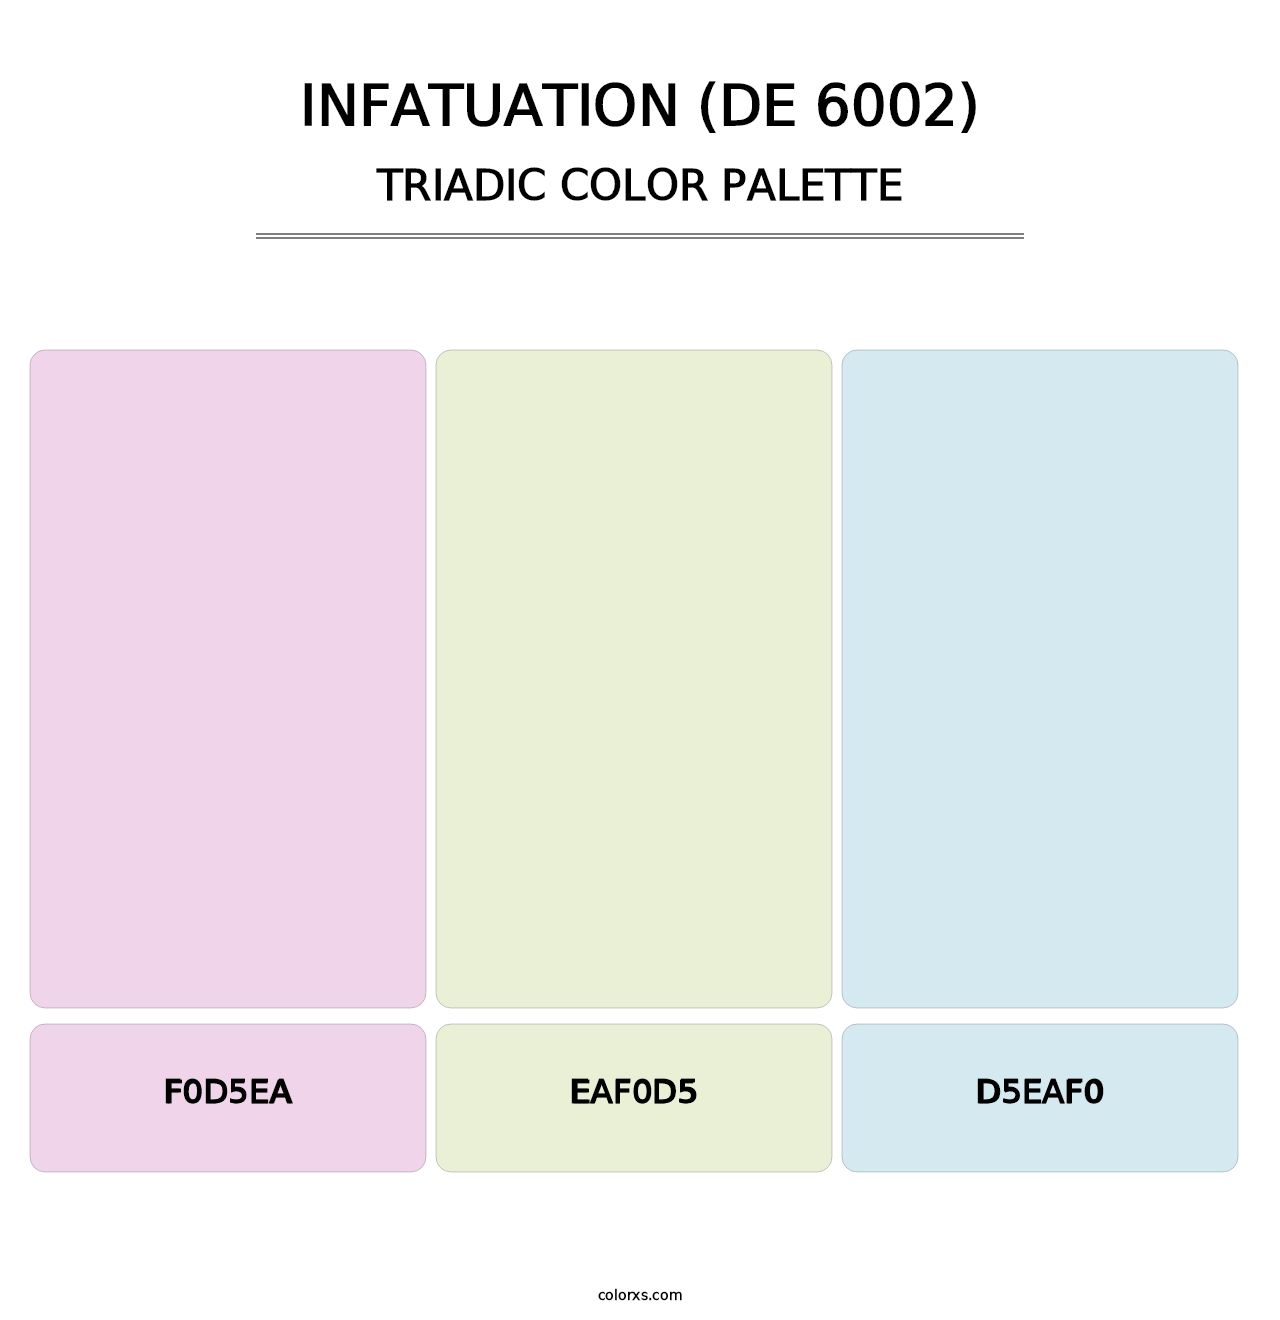 Infatuation (DE 6002) - Triadic Color Palette